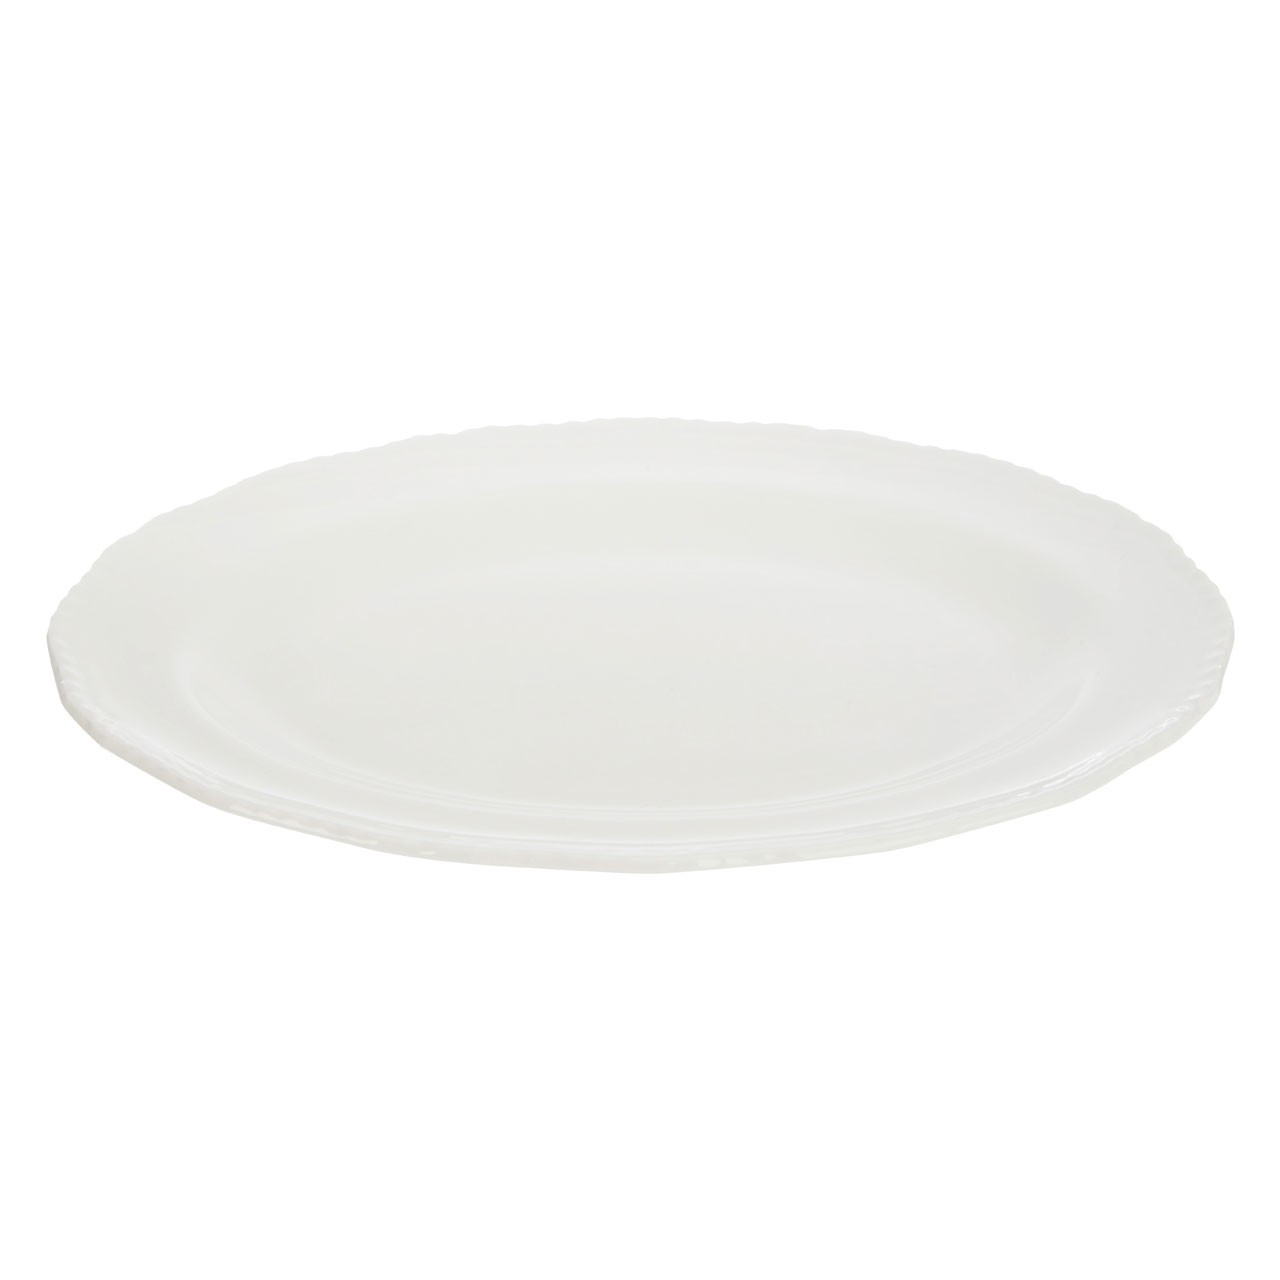 Platter - Embossed White